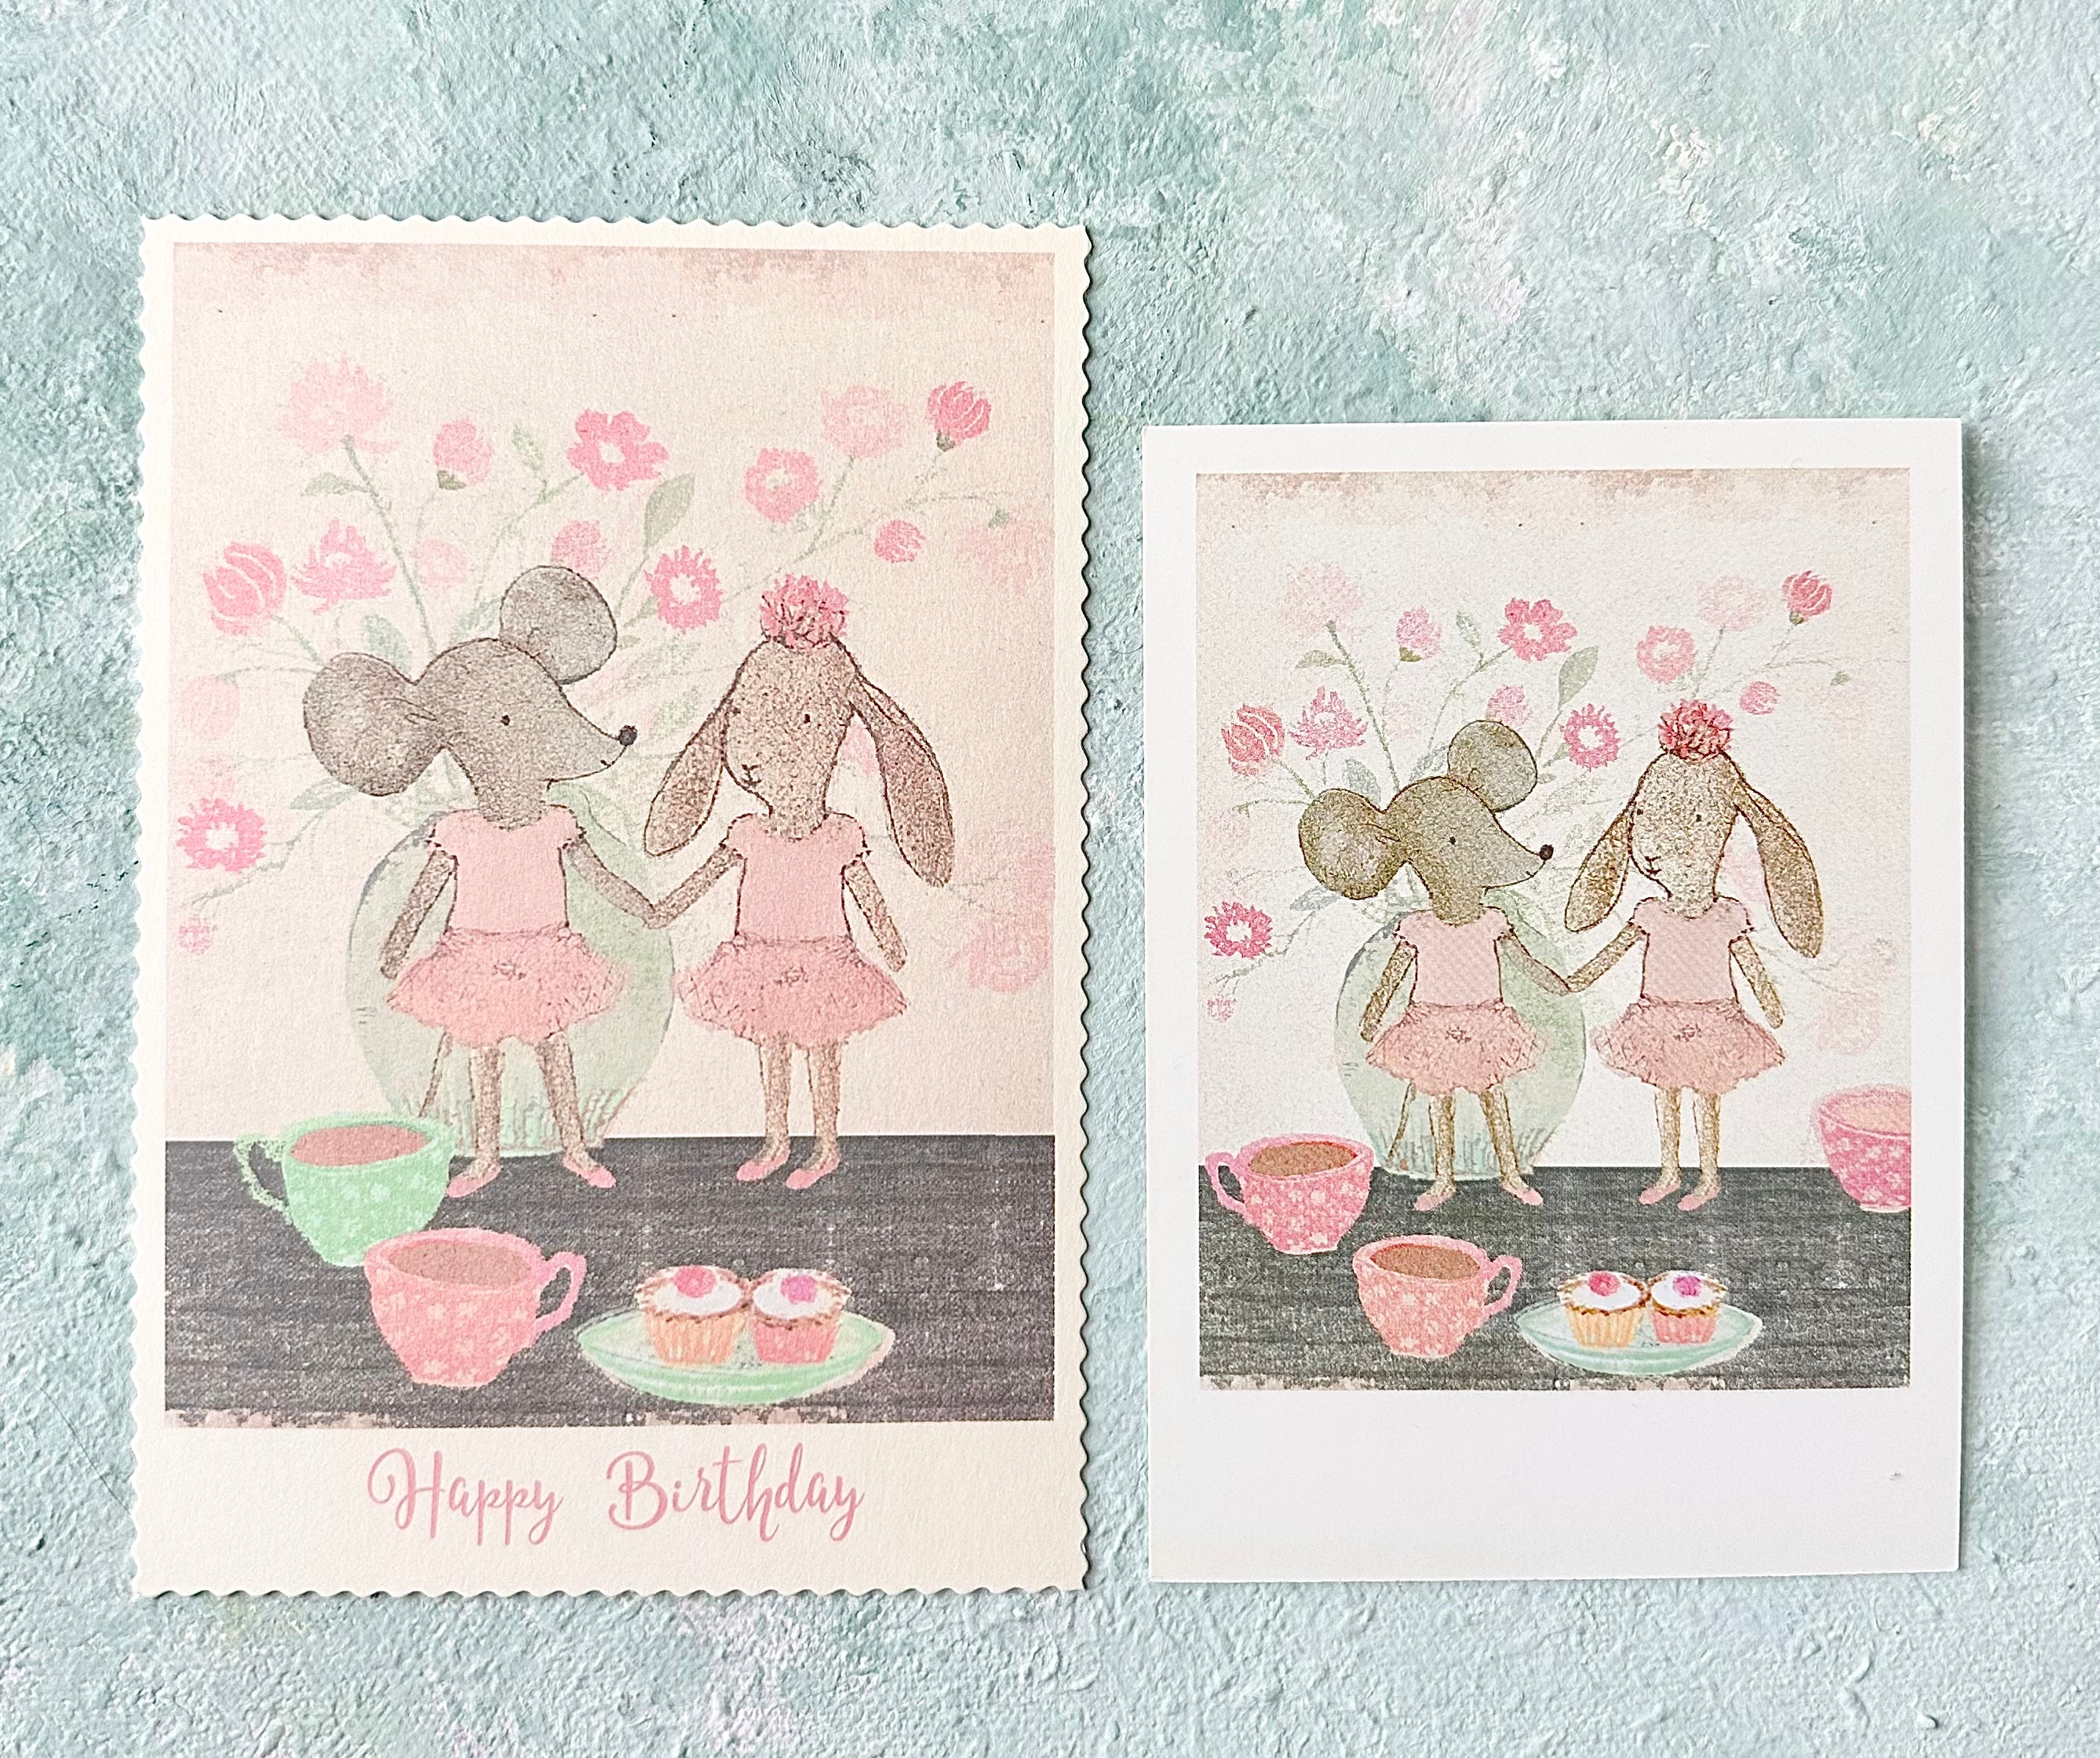 Birthday Card “Ballerinas” - 2018